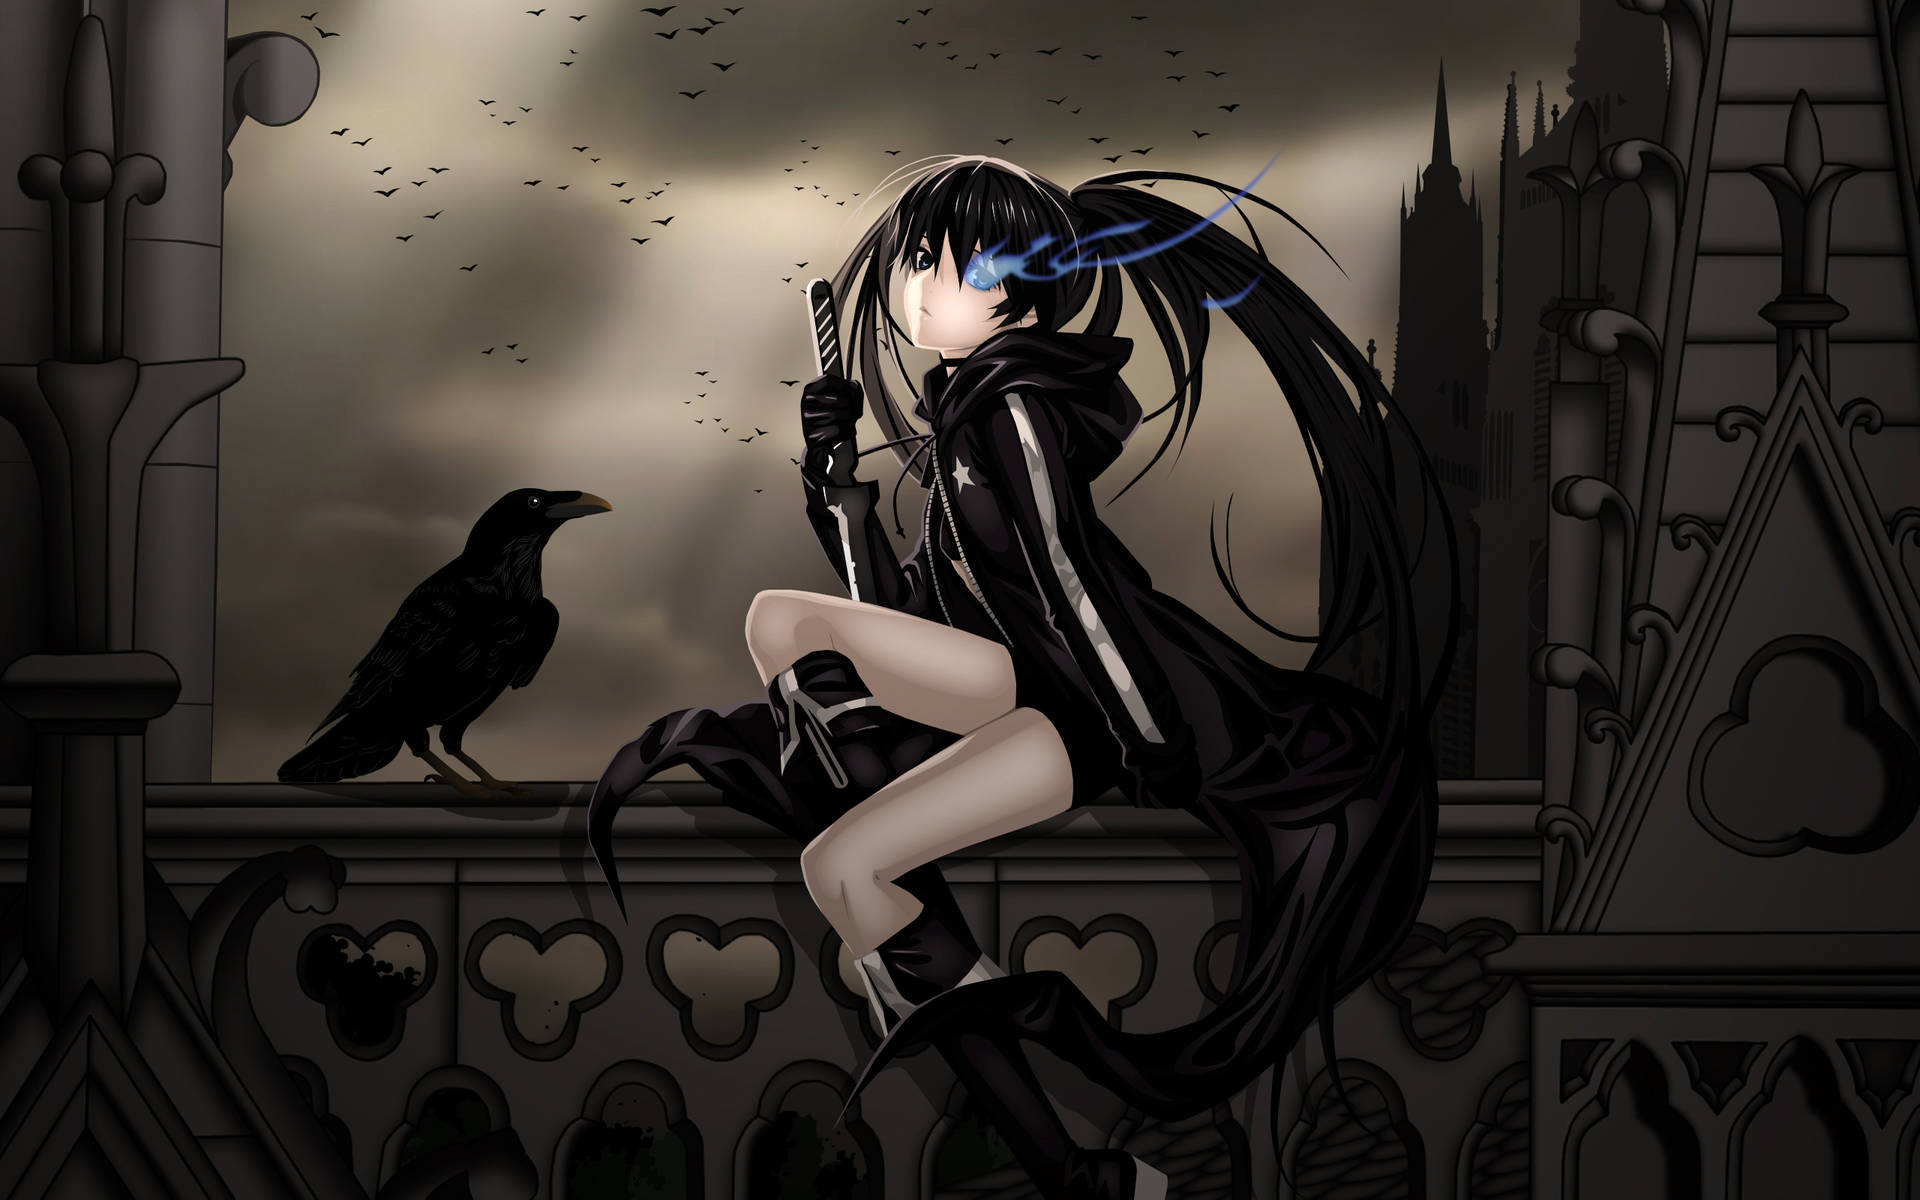 Aesthetic Anime Emo Girl Raven Black Wallpaper: Phiêu lưu và tinh tế với girl anime emo tạo nên bức tường đen raven đẹp mắt. Những chi tiết màu sắc sẽ tạo nên một cảm giác hoàn toàn mới cho bạn, để bạn dễ dàng thể hiện sự khác biệt và cá tính của mình.